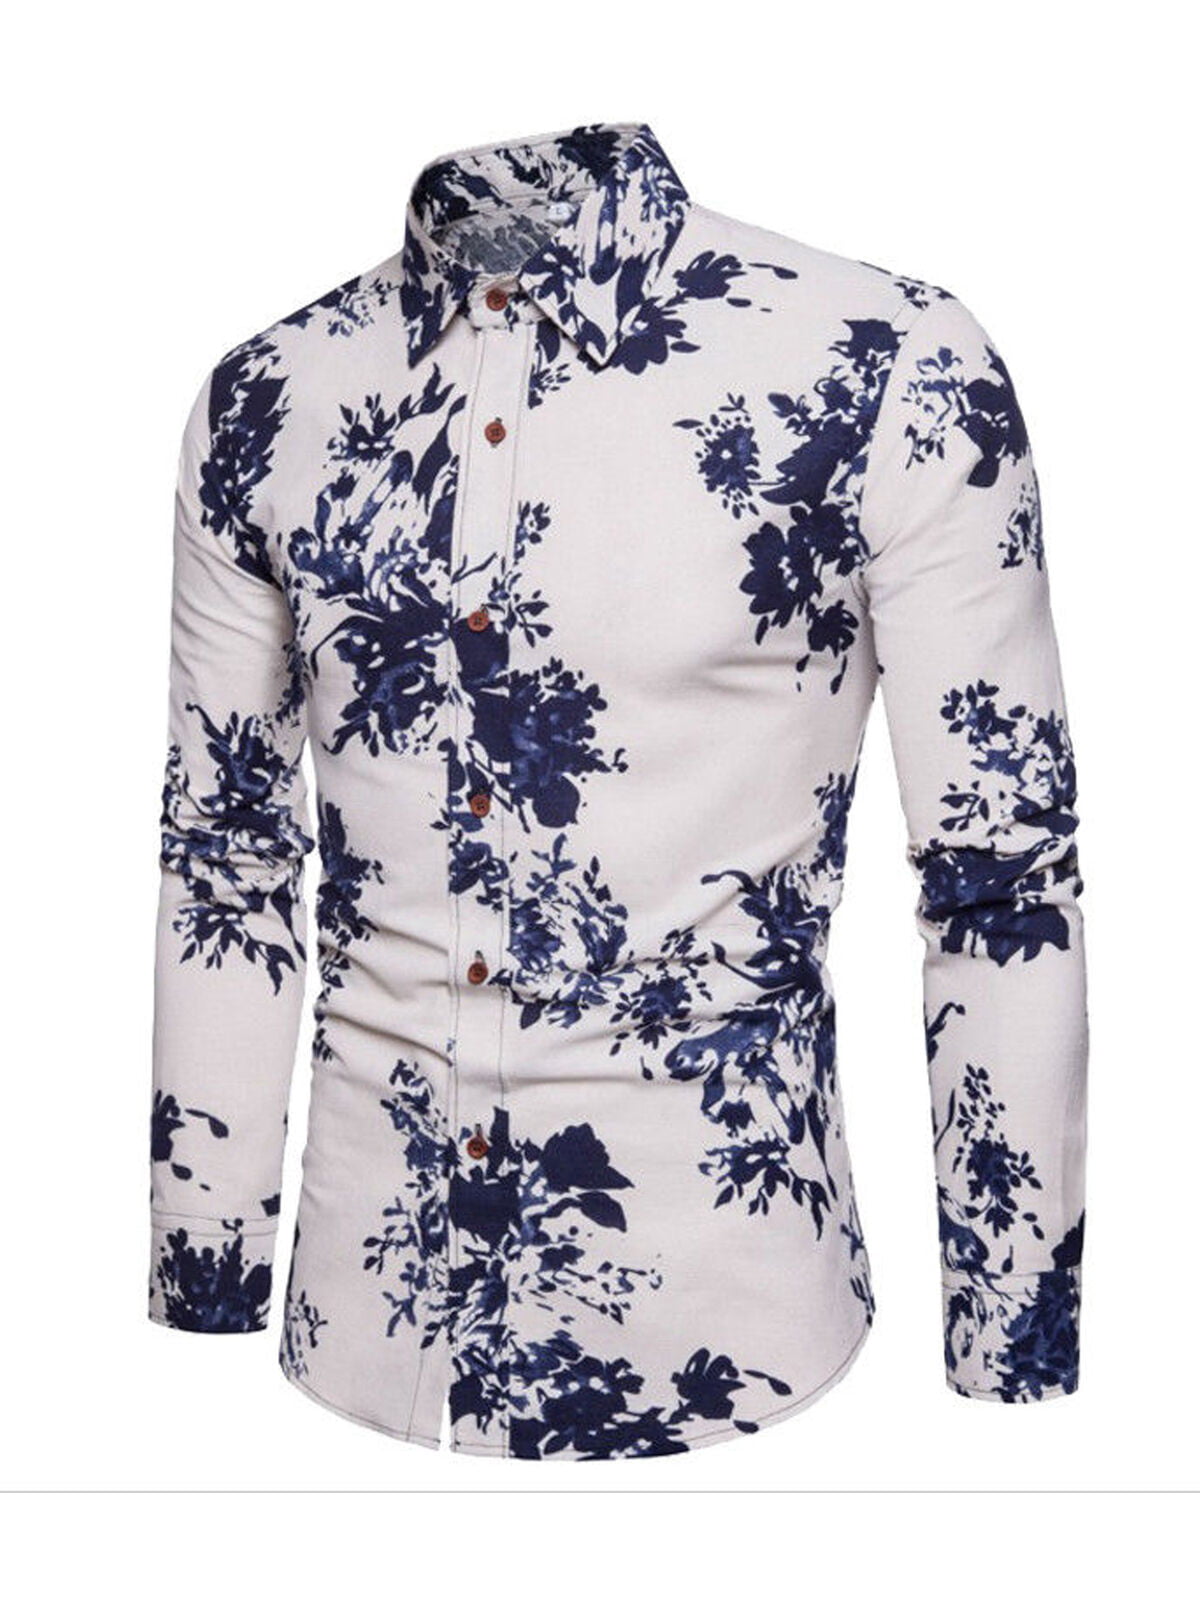 Men's Cotton Blend Double Collar Floral Design Casual Dress Shirts